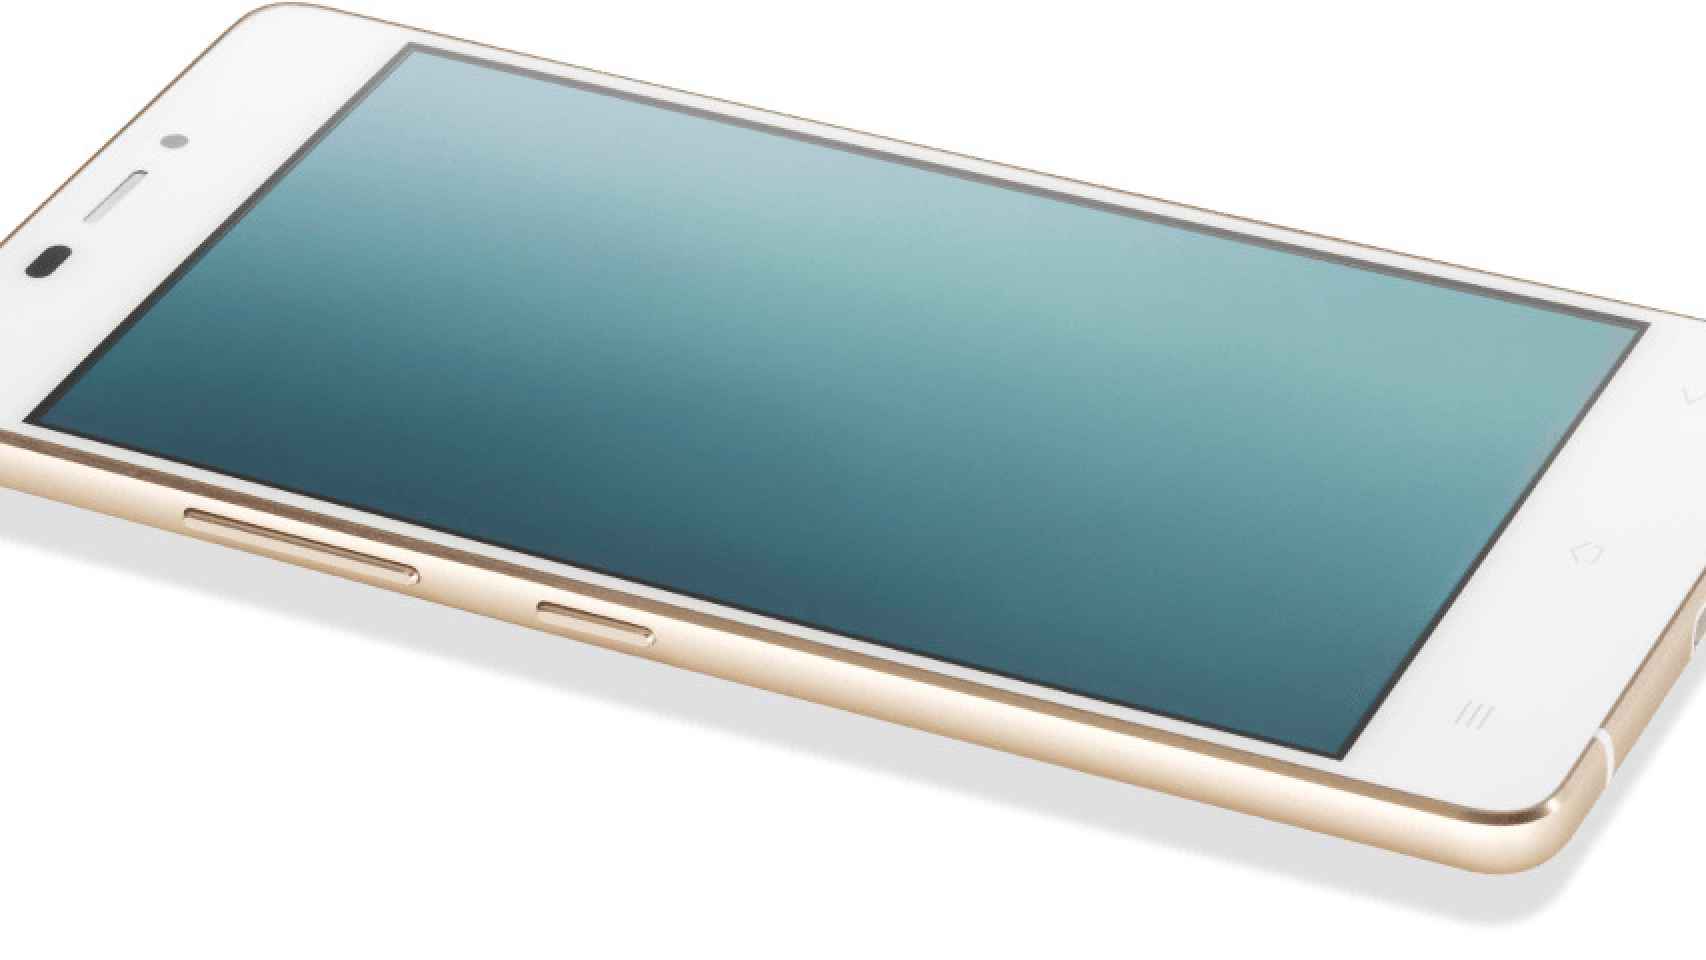 Kazam Tornado 348, el smartphone más ligero y delgado del mundo: 95g y 5,15mm